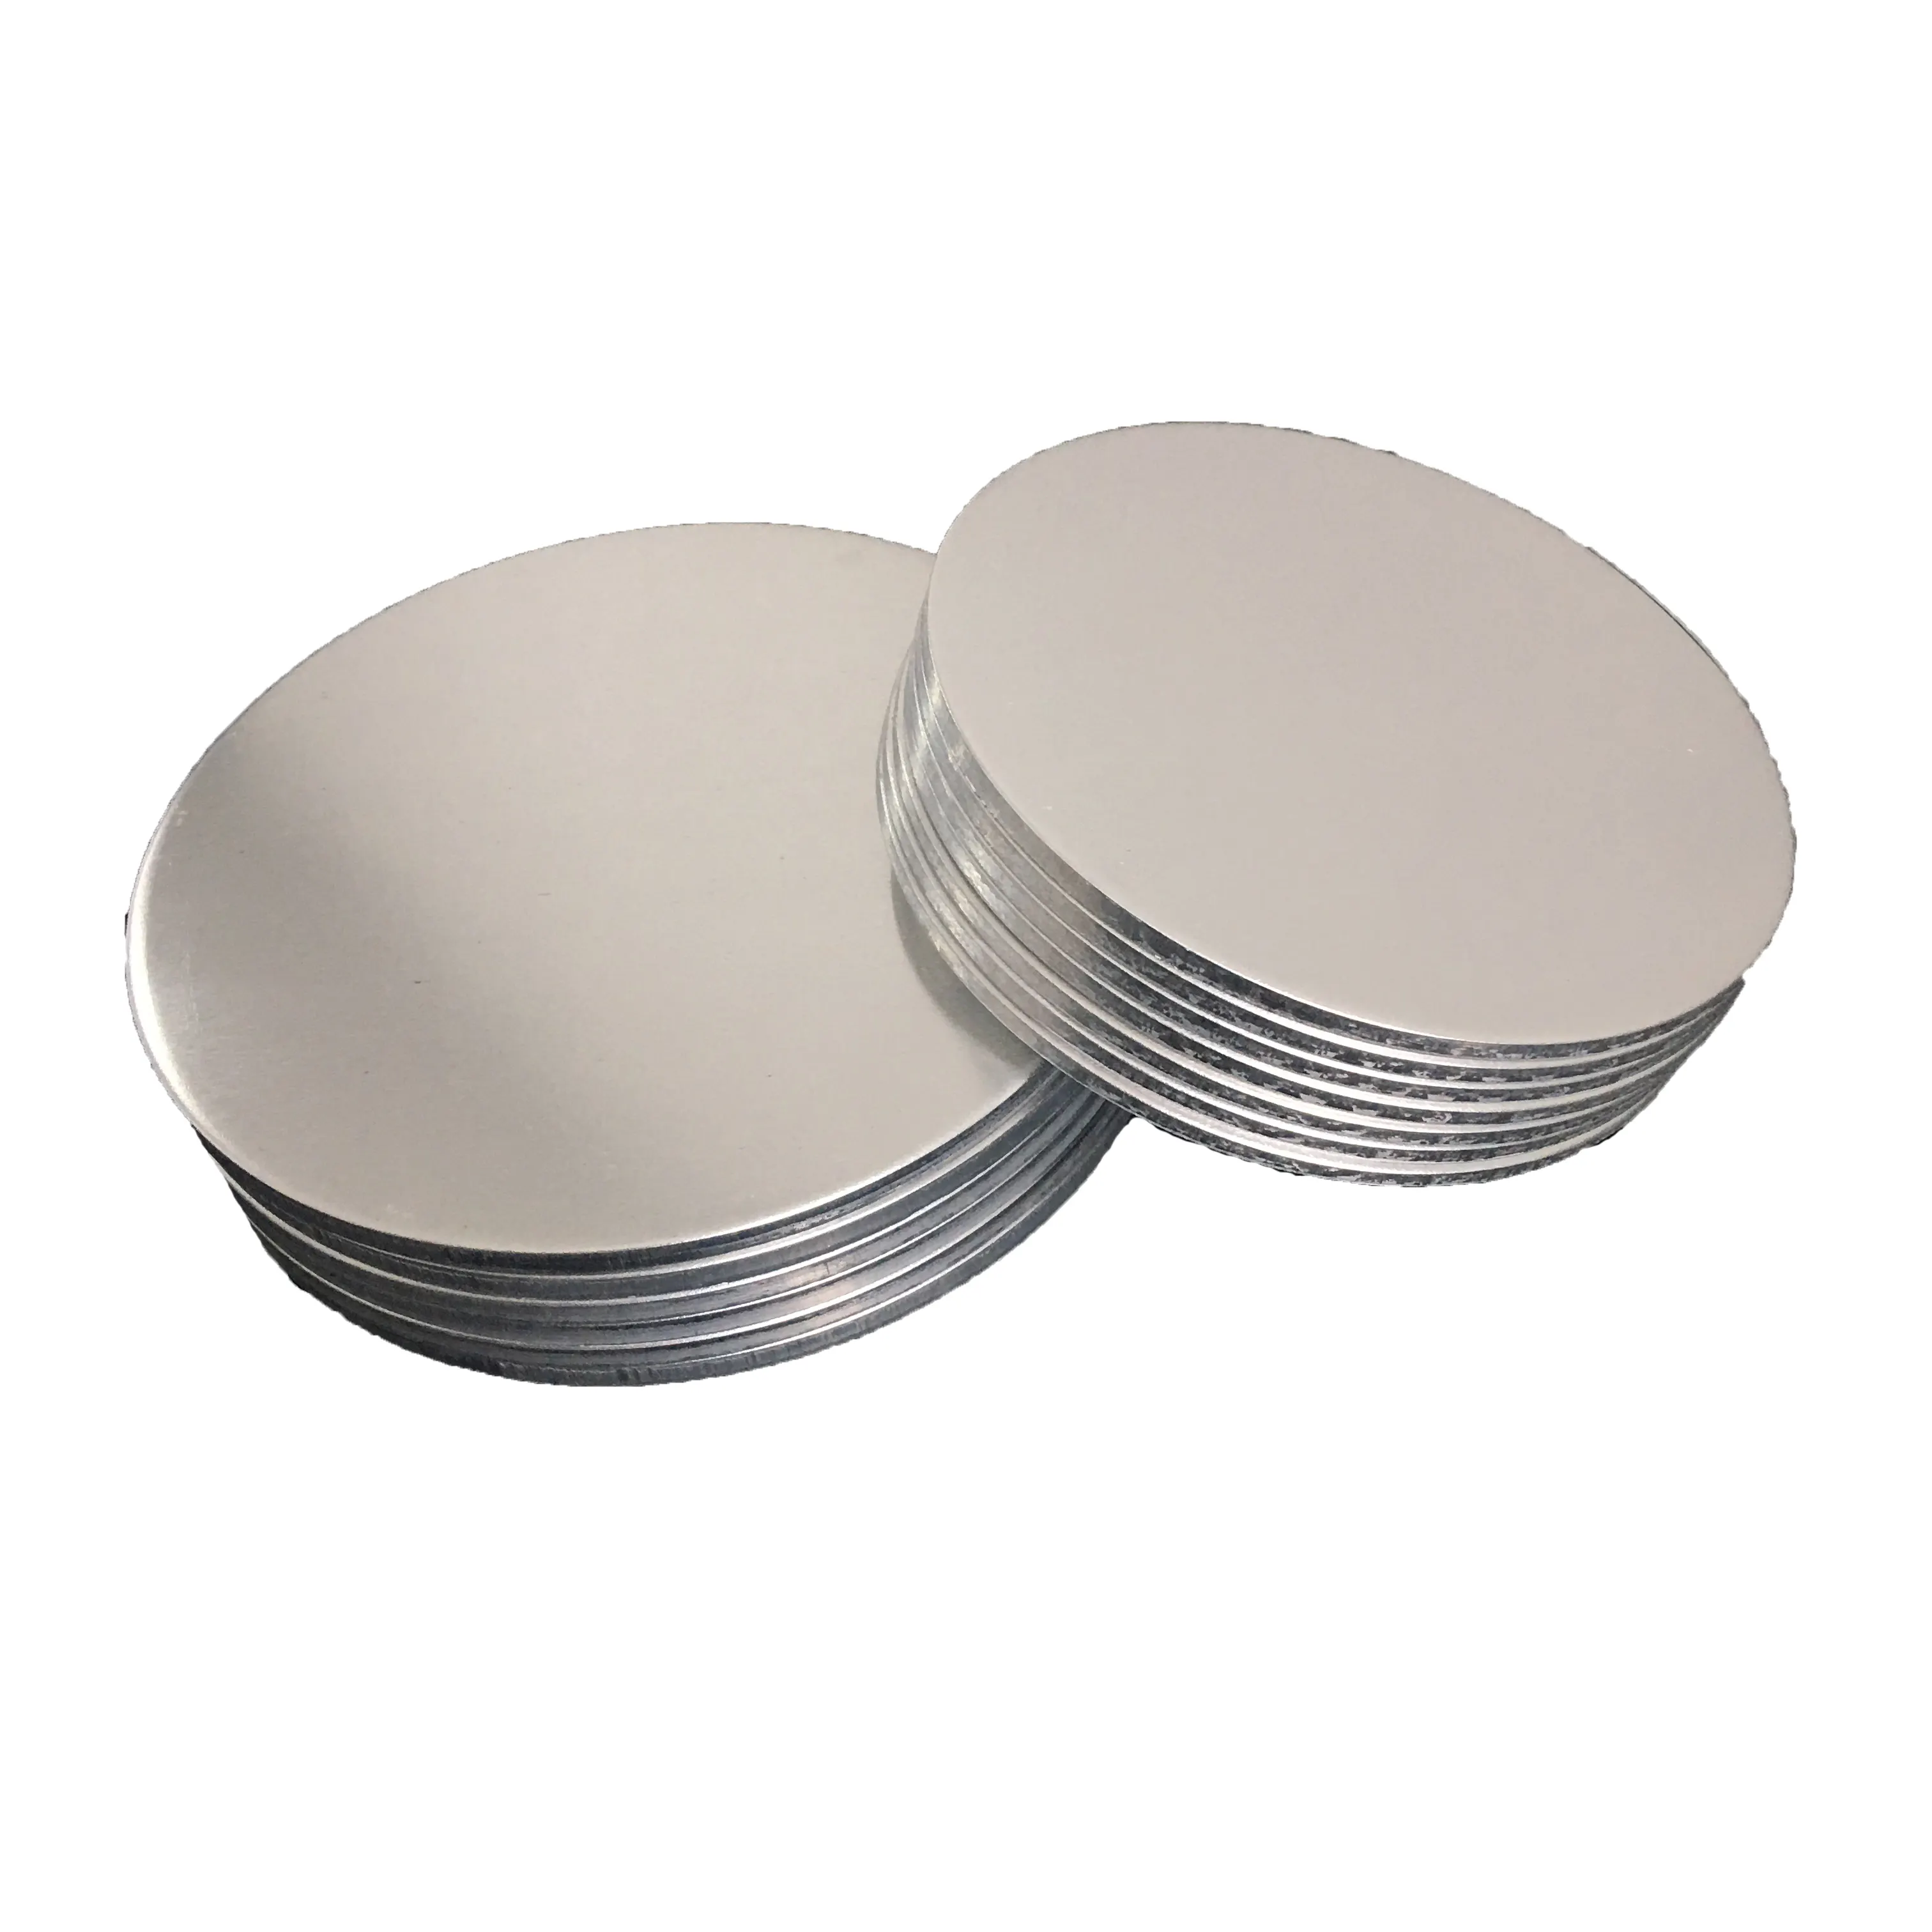 Nuevo Tipo y precio competitivo círculo de aluminio/disco de inducción olla a presión ali exportación